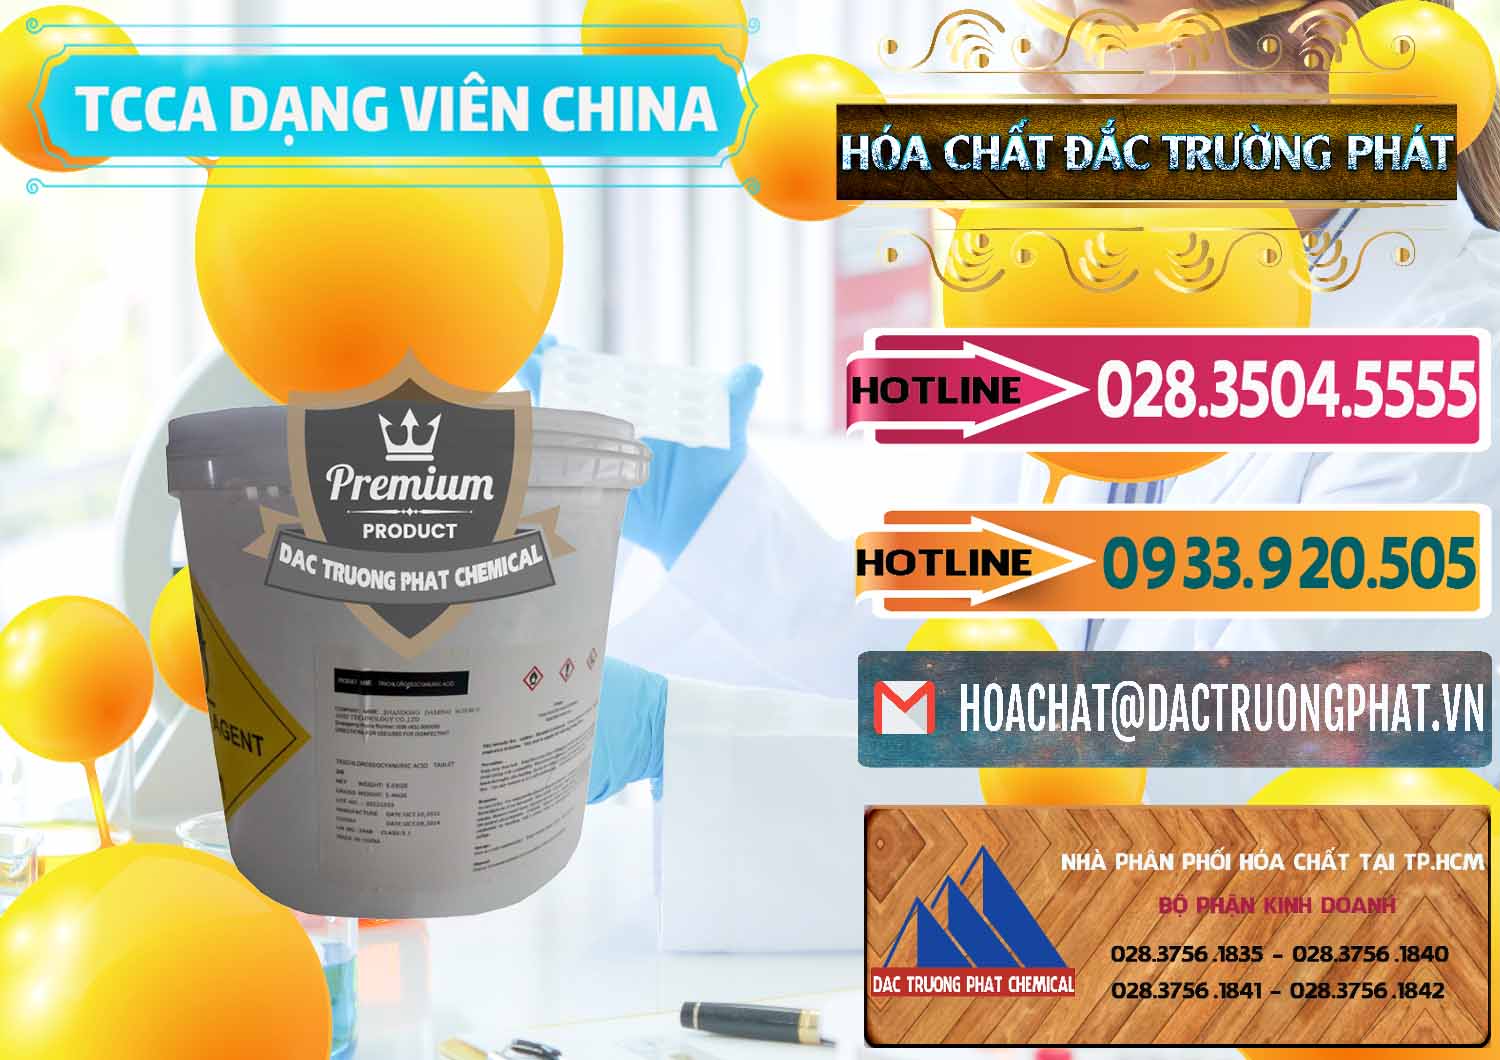 Bán ( cung cấp ) TCCA - Acid Trichloroisocyanuric Dạng Viên Thùng 5kg Trung Quốc China - 0379 - Nơi chuyên bán _ phân phối hóa chất tại TP.HCM - dactruongphat.vn